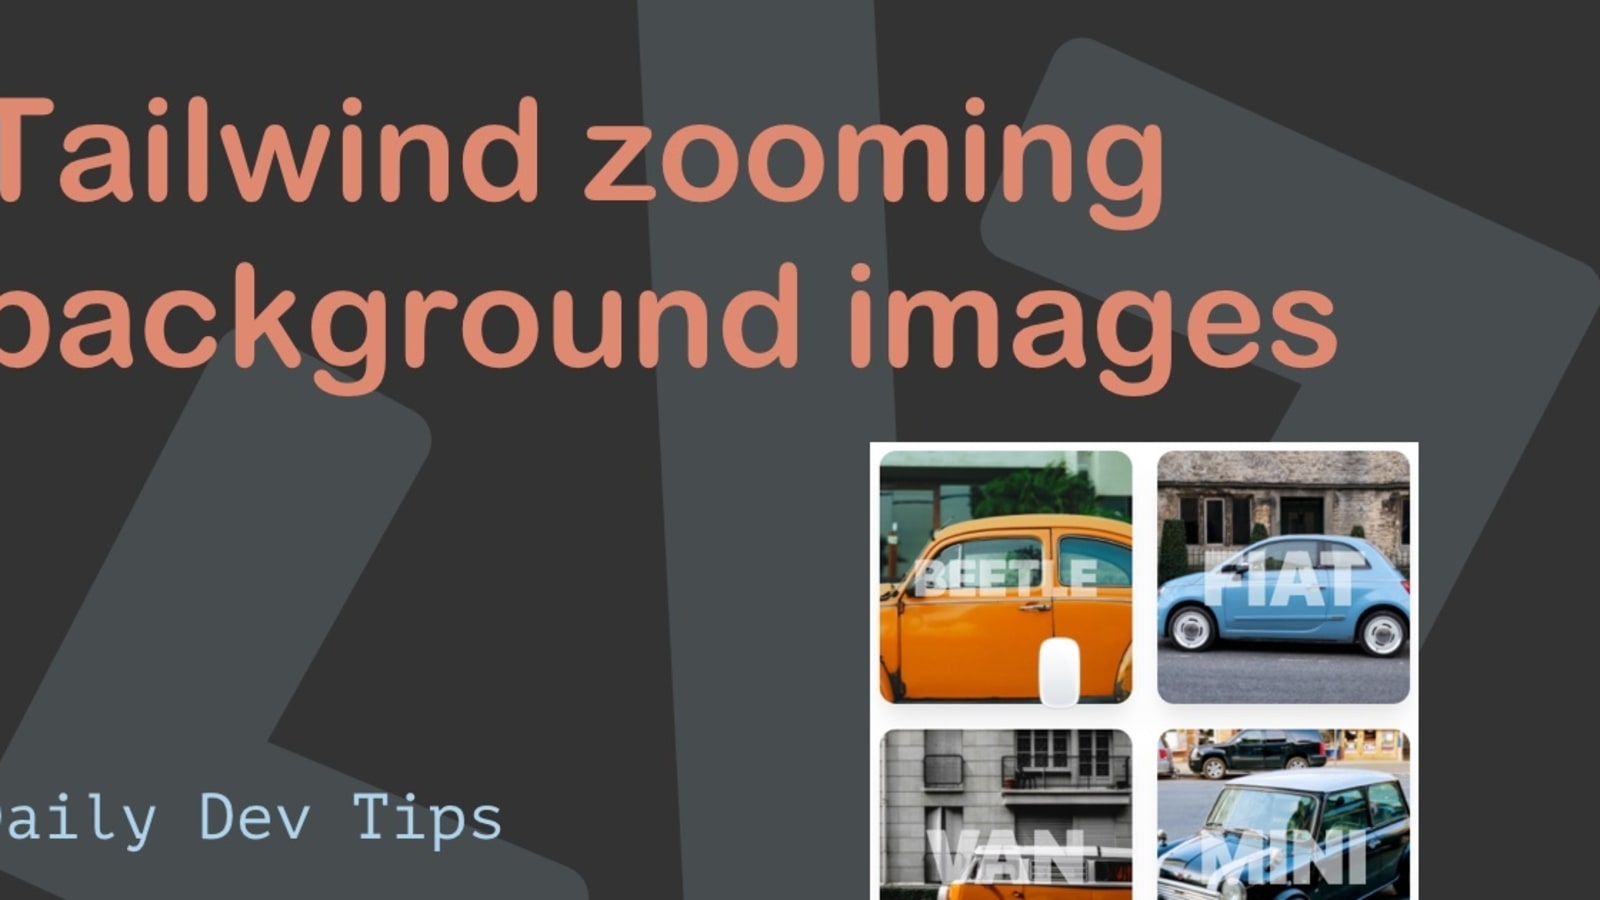 Zooming Background Images: Chỉ cần nhìn vào bức ảnh này, bạn sẽ nhận ra sự tuyệt vời của kỹ thuật Zooming Background Images. Tạo ra một hiệu ứng động đầy tinh tế và sáng tạo, bức ảnh này sẽ chắc chắn khiến bạn thích thú.